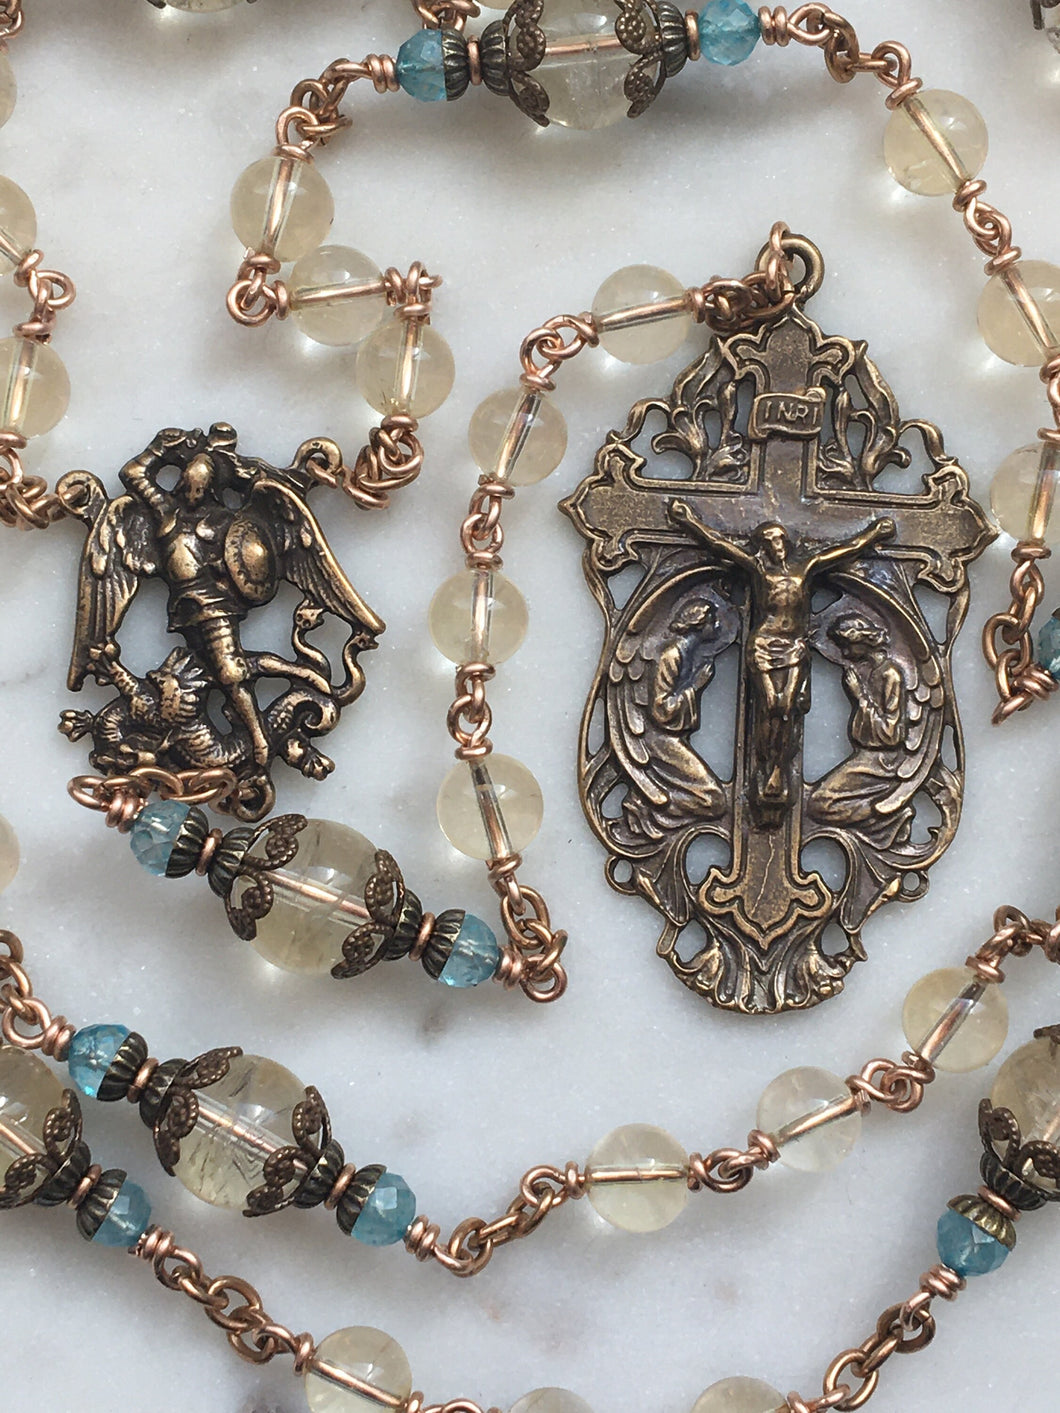 Saint Michael Chaplet - Wire wrapped - Lemon Quartz and Citrine Gemstones - Bronze - St. Michael and Angels Crucifix